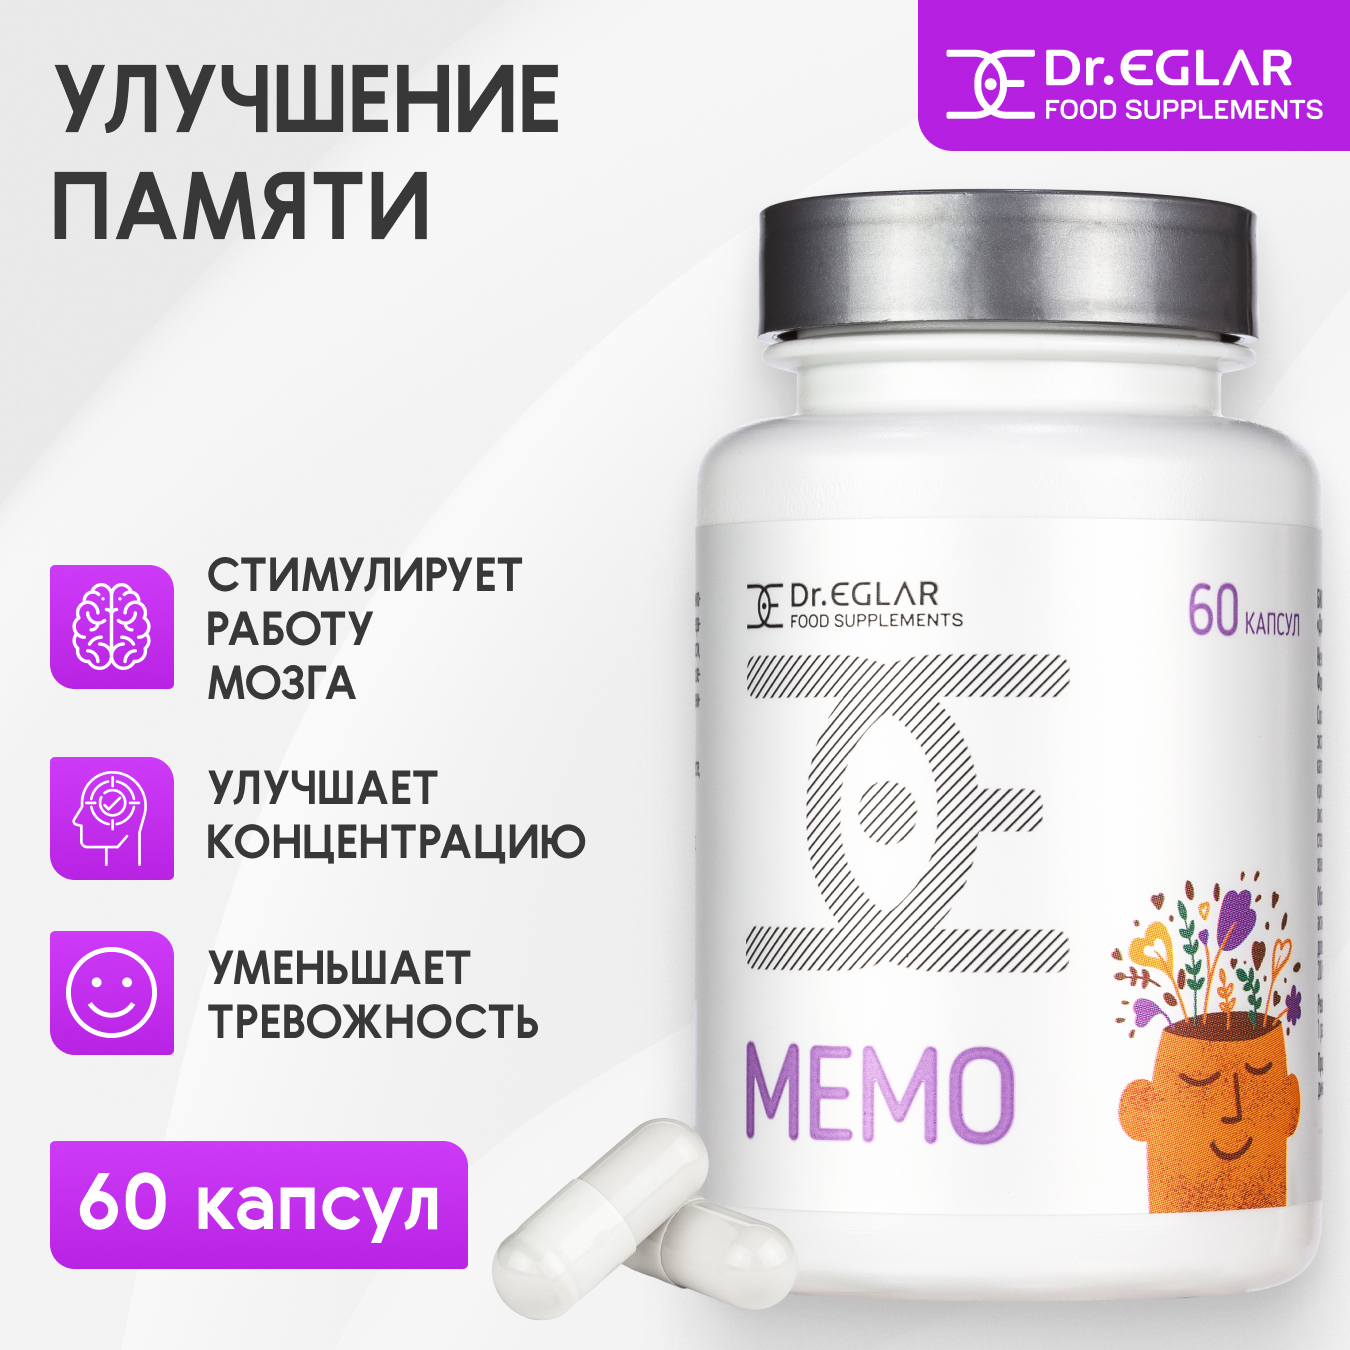 Витаминный комплекс Dr.Eglar MEMO для мозговой активности и памяти 450 мг, 60 капсул